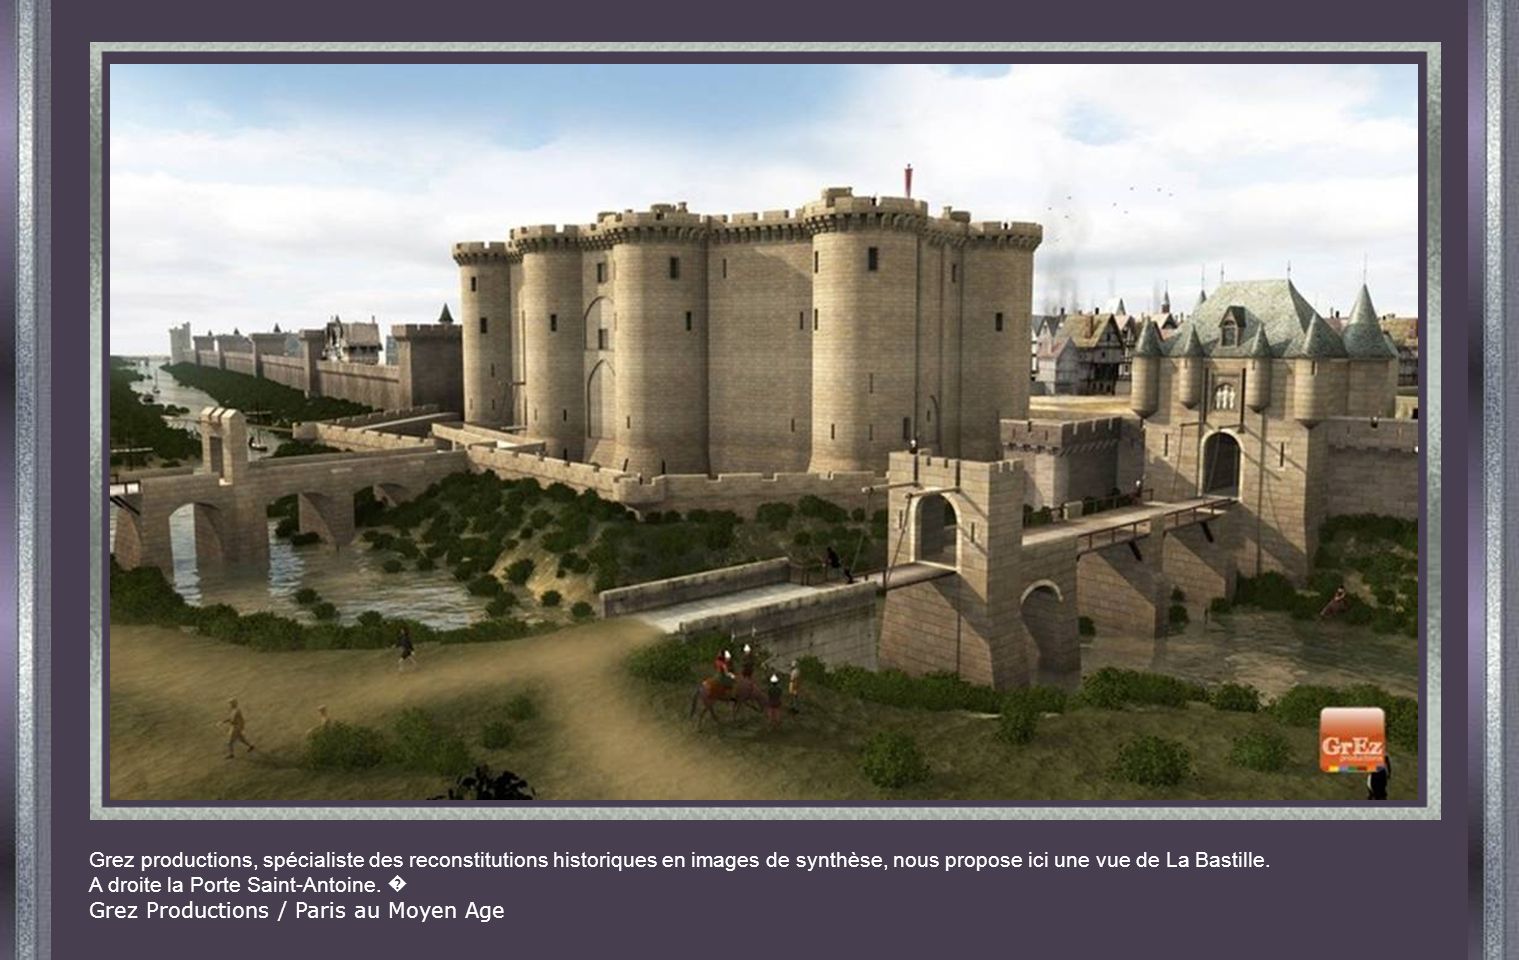 Grez productions, spécialiste des reconstitutions historiques en images de synthèse, nous propose ici une vue de La Bastille.